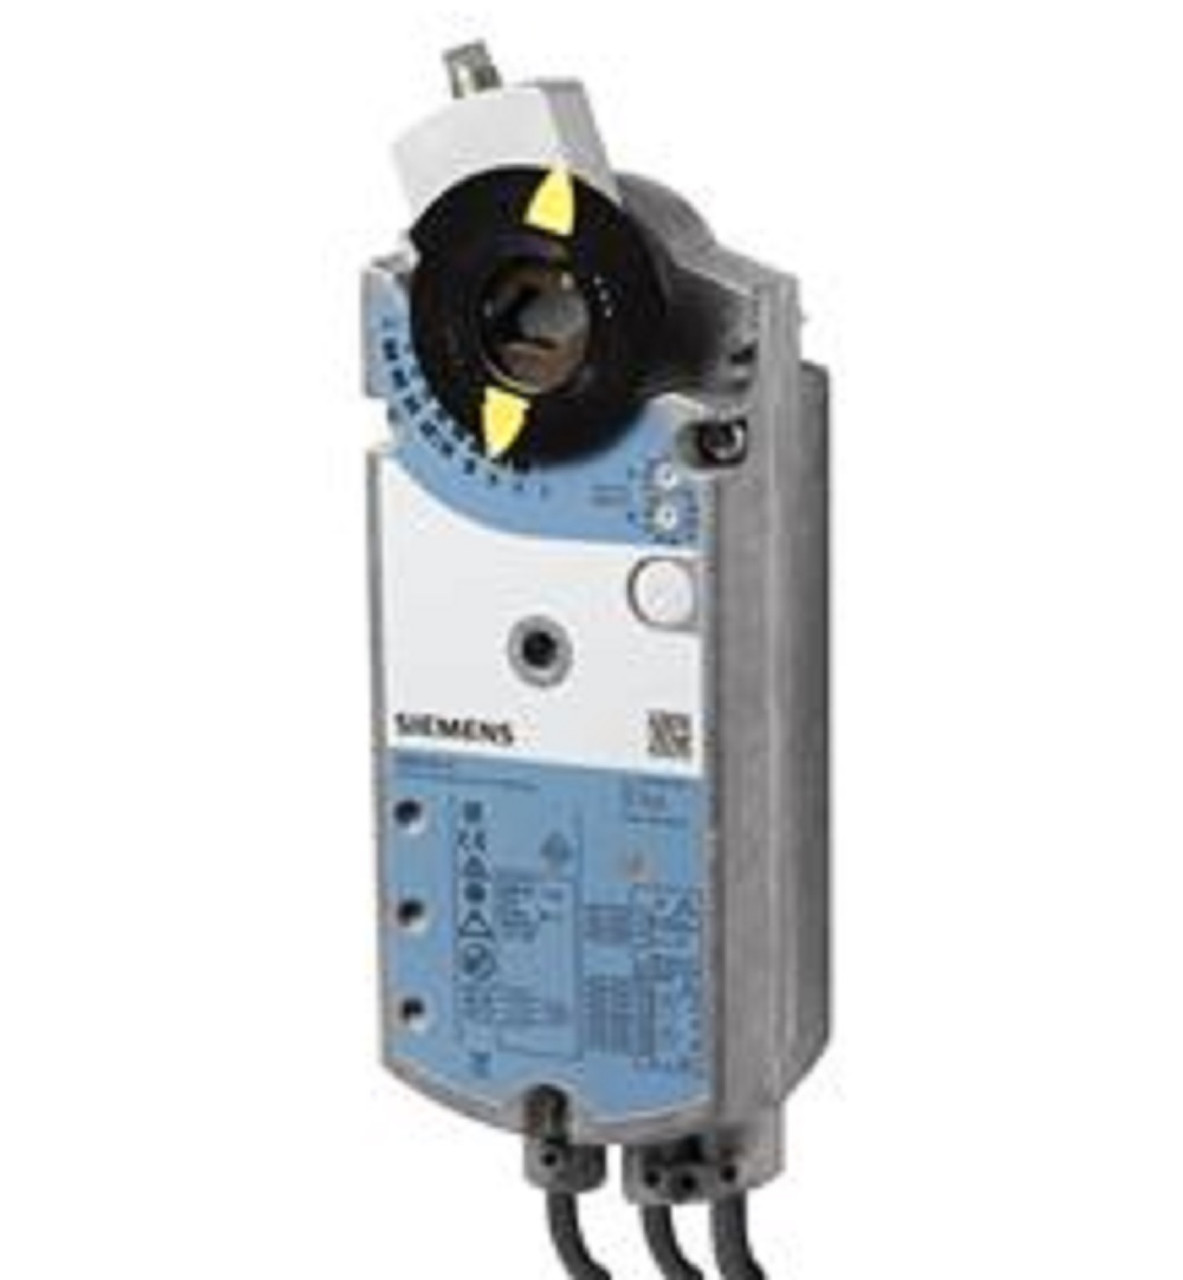 Siemens GBB164.1E Rotary Air Damper Actuator, AC24V, DC 0-35 V Adj, 25 Nm, 150 s [New]